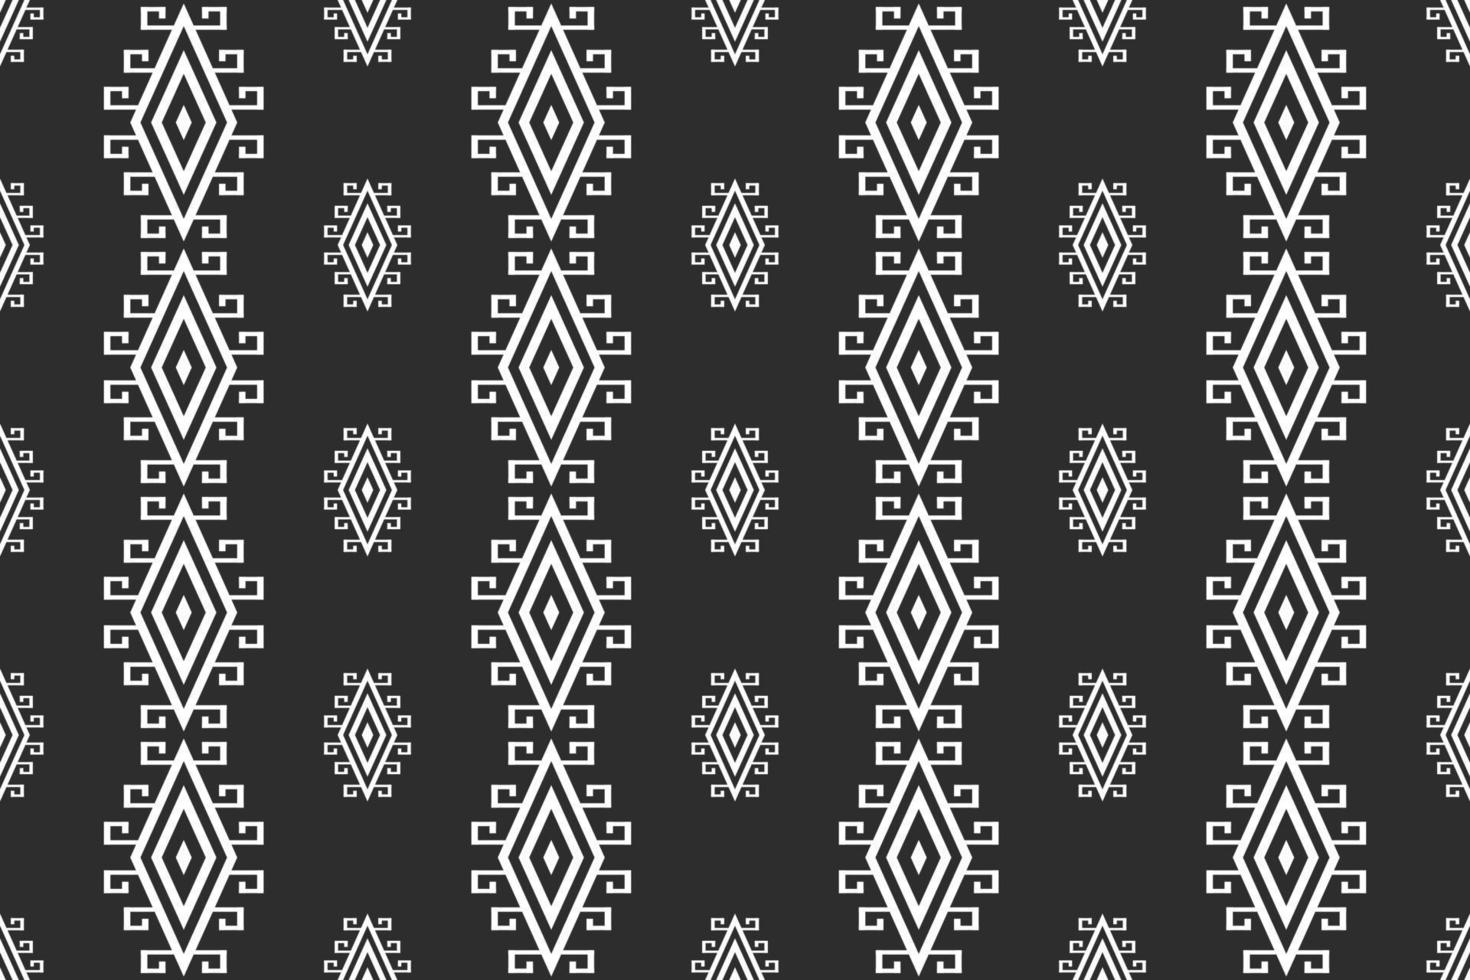 patrón geométrico étnico oriental sudáfrica diseño tradicional para alfombra de fondo, papel tapiz, camisa, batik, patrón, vector, ilustración, bordado vector